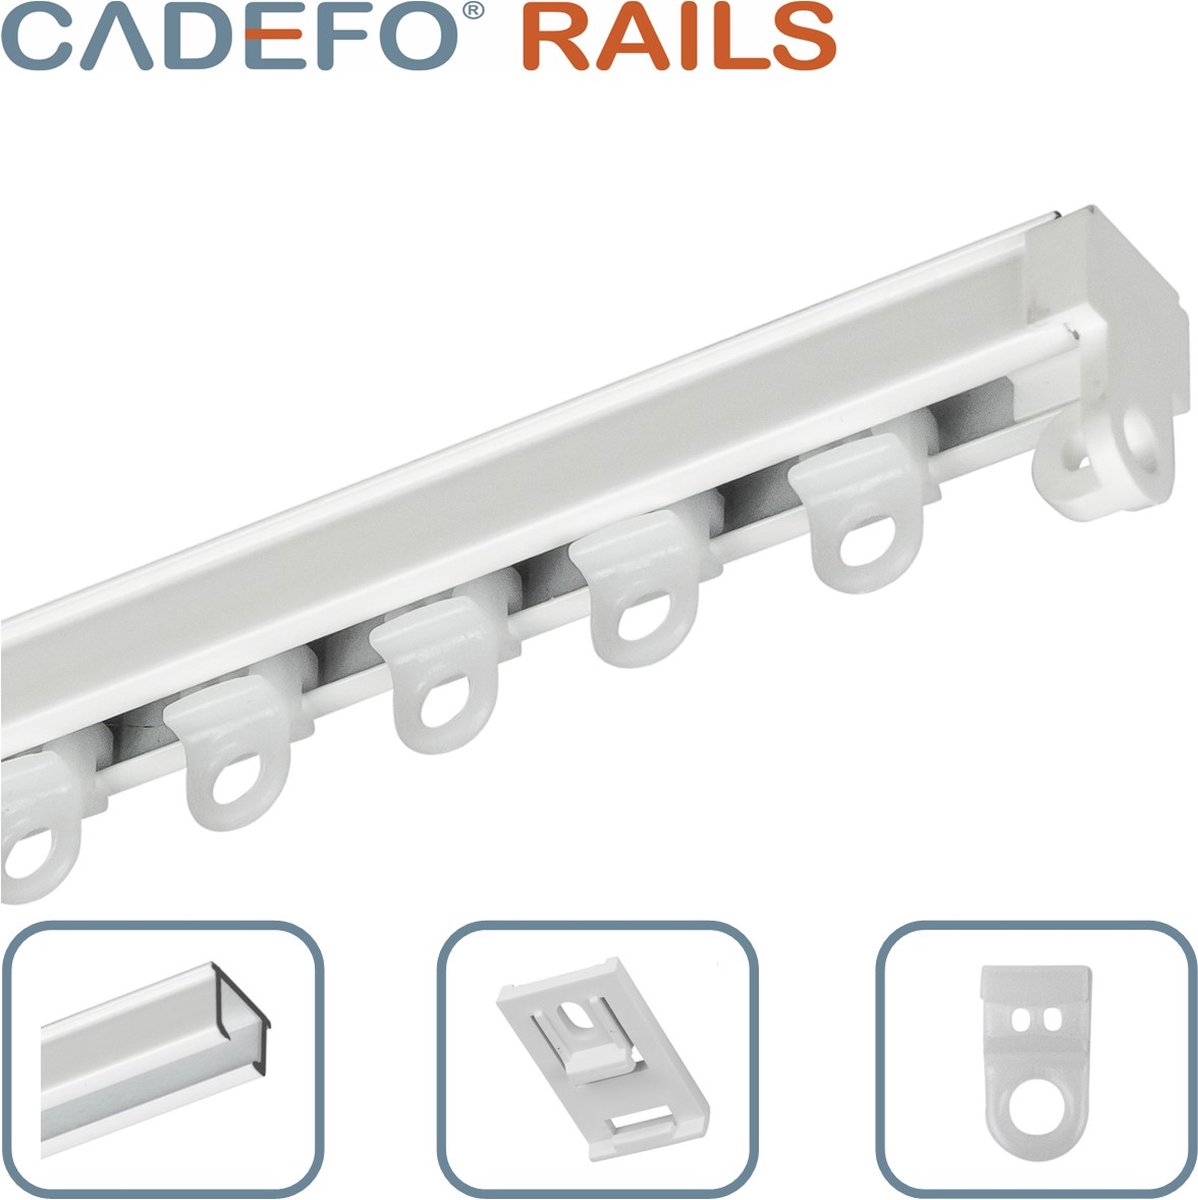 CADEFO RAILS (551 - 600 cm) Gordijnrails - Compleet op maat! - UIT 1 STUK - Leverbaar tot 6 meter - Plafondbevestiging - Lengte 580 cm